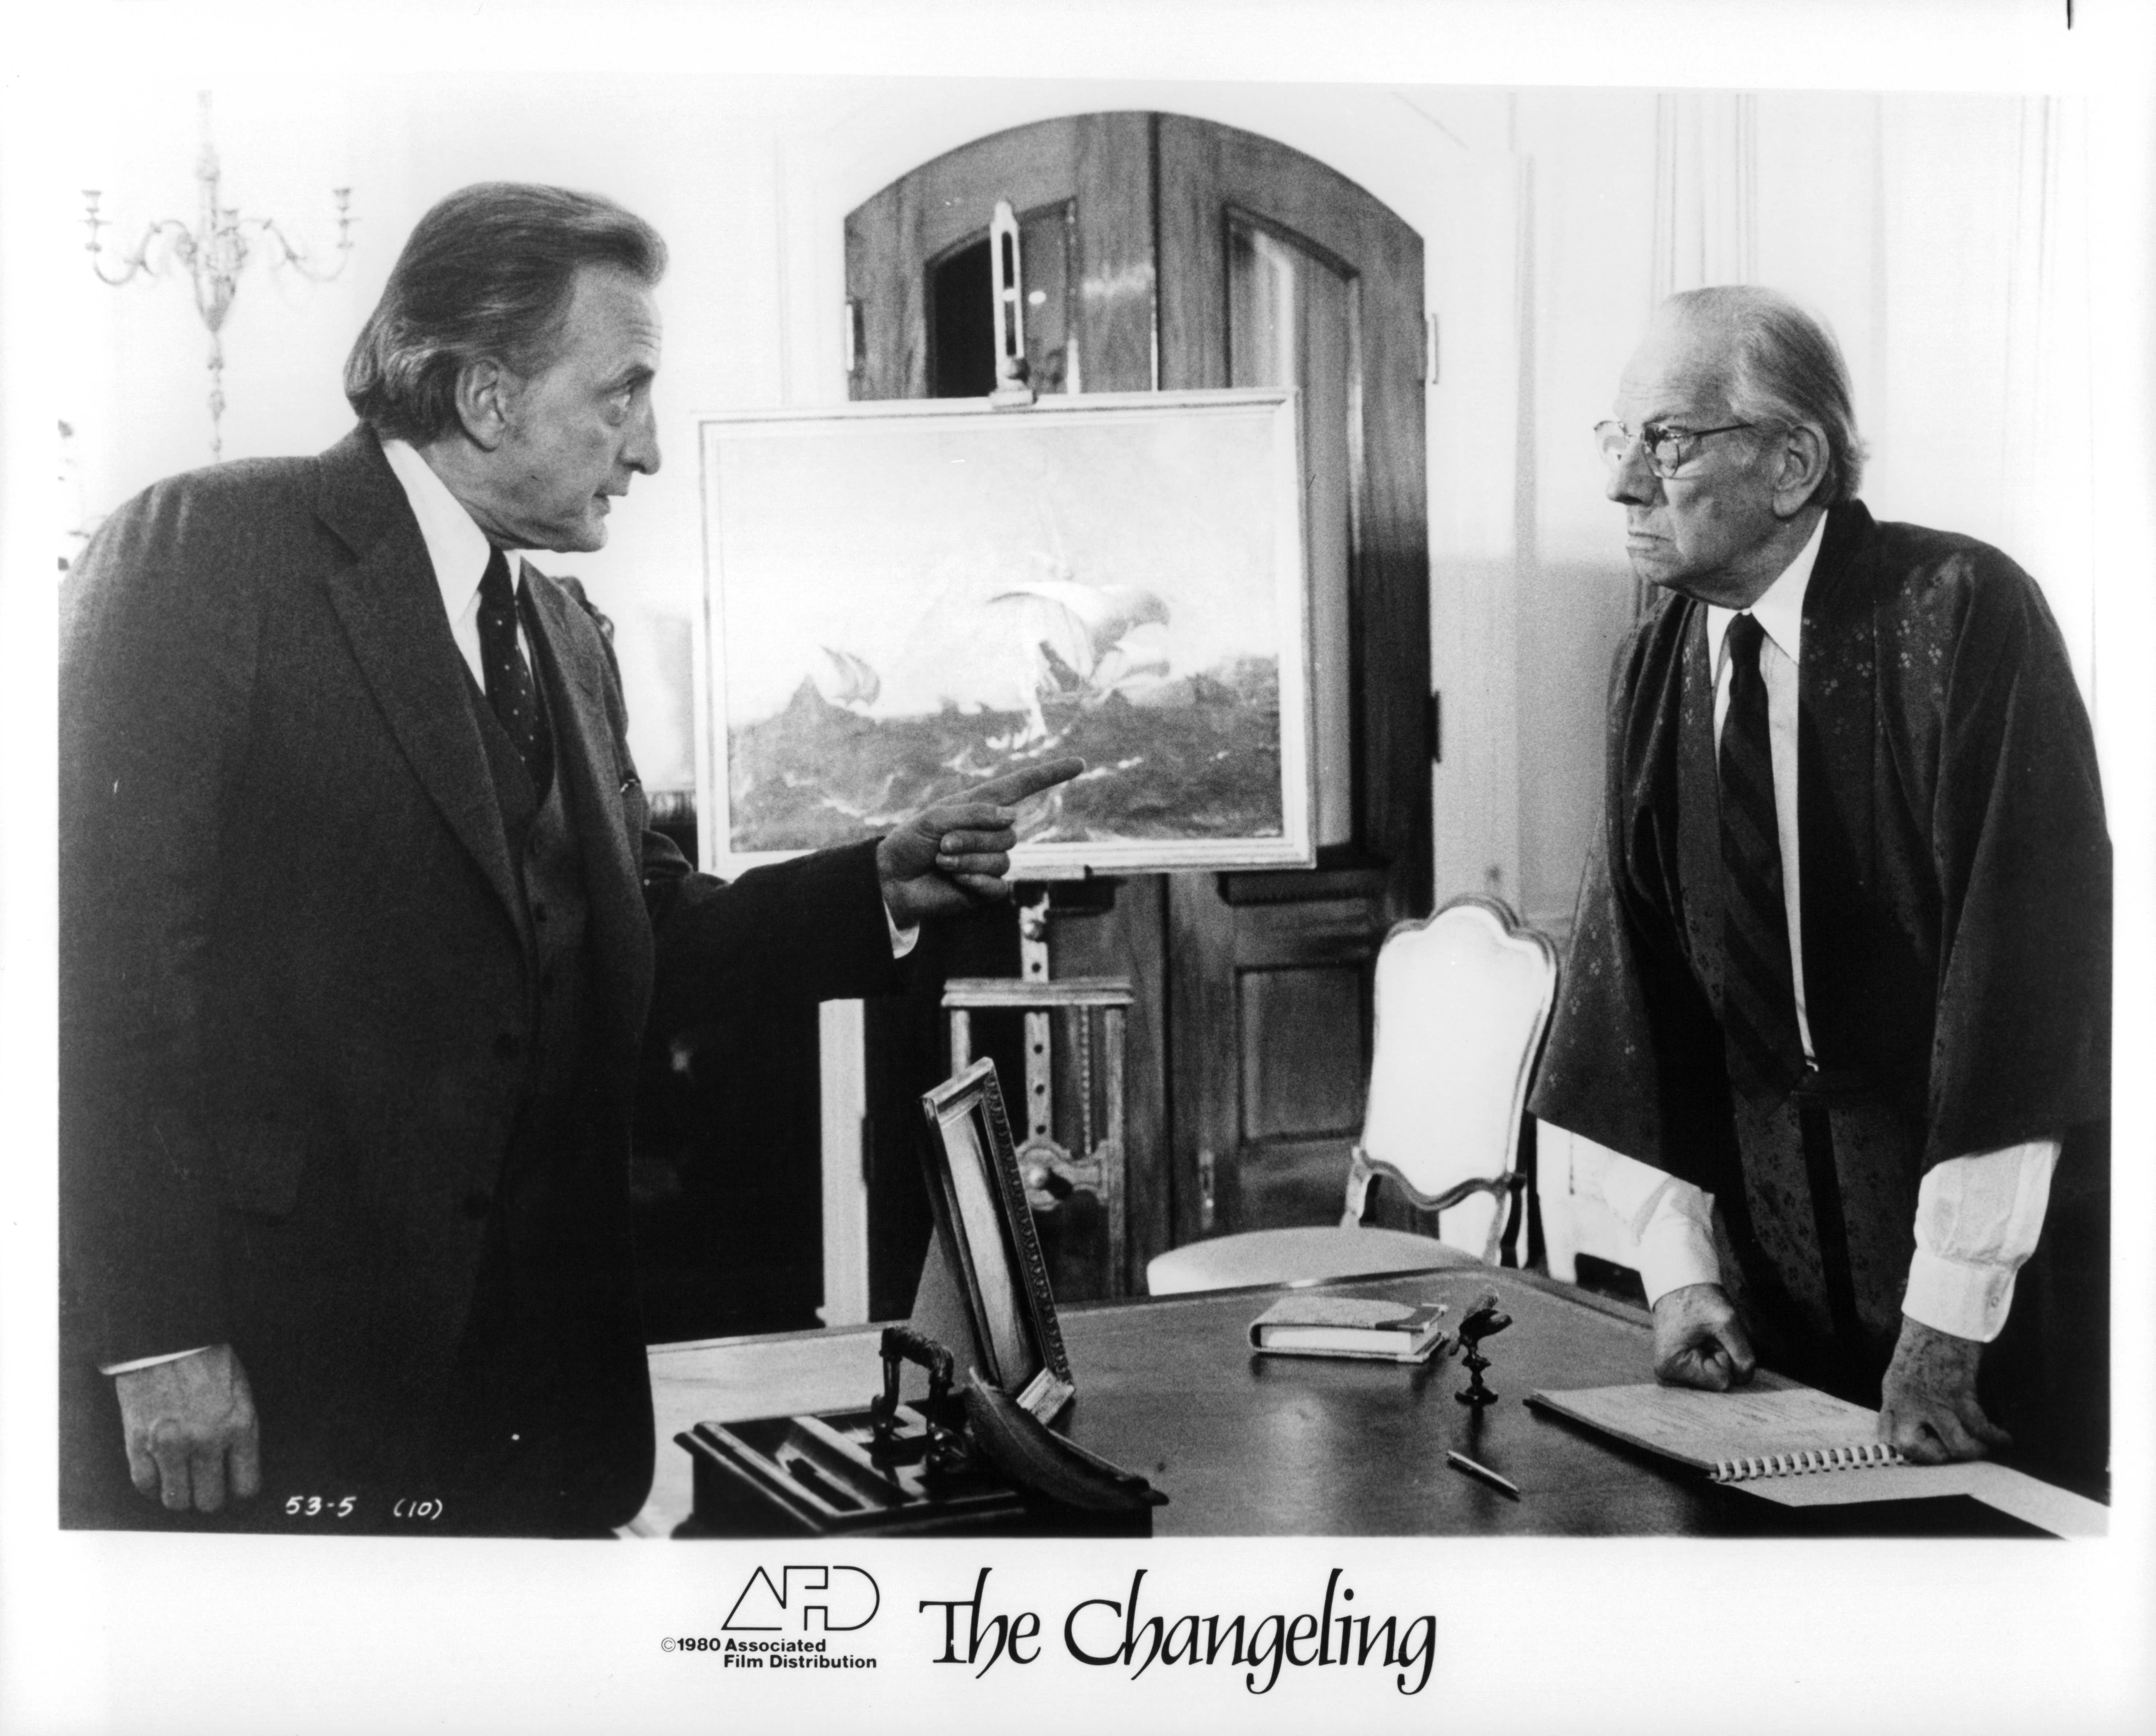 The Changeling (1980) Screenshot 5 